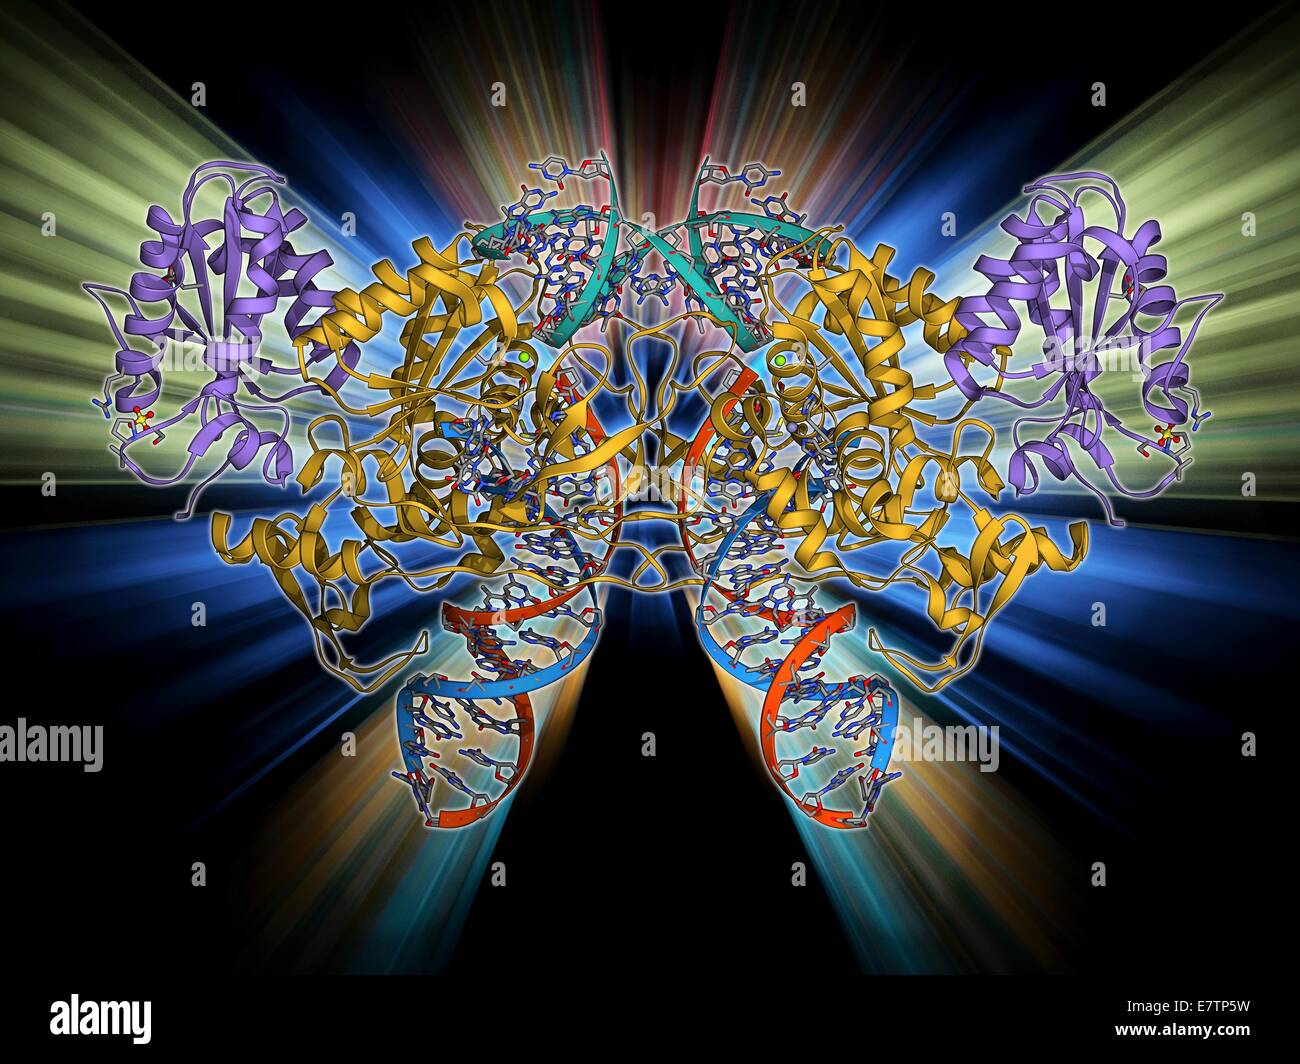 Retroviral Intasome Molekül. Molekulares Modell des einen Intasome von einem Retrovirus komplexiert mit Wirtszelle DNA (Desoxyribonukleinsäure). Intasomes sind Nucleoprotein-komplexe des Enzyms Integrase und virale DNA. Integrase wird verwendet, um die virale DNA integrieren Stockfoto